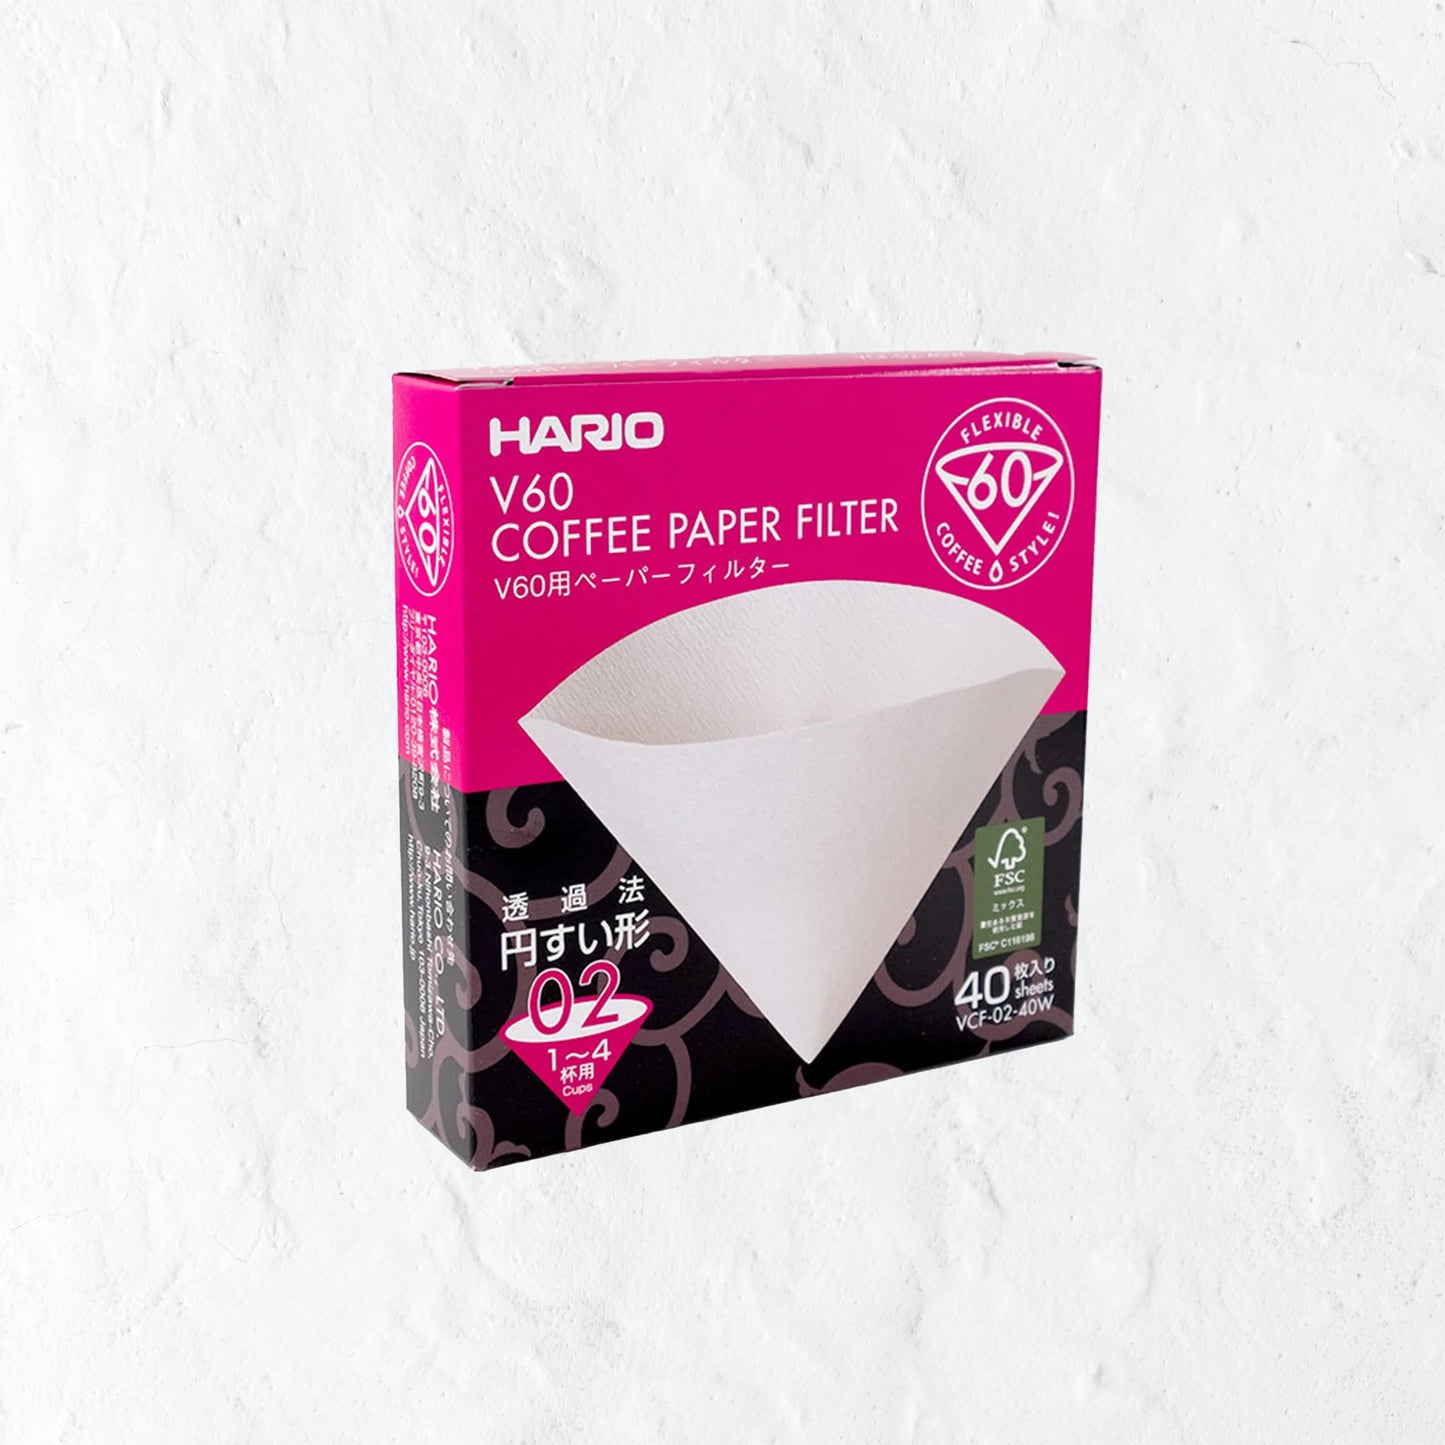 Hario paper filter - V60-01/40